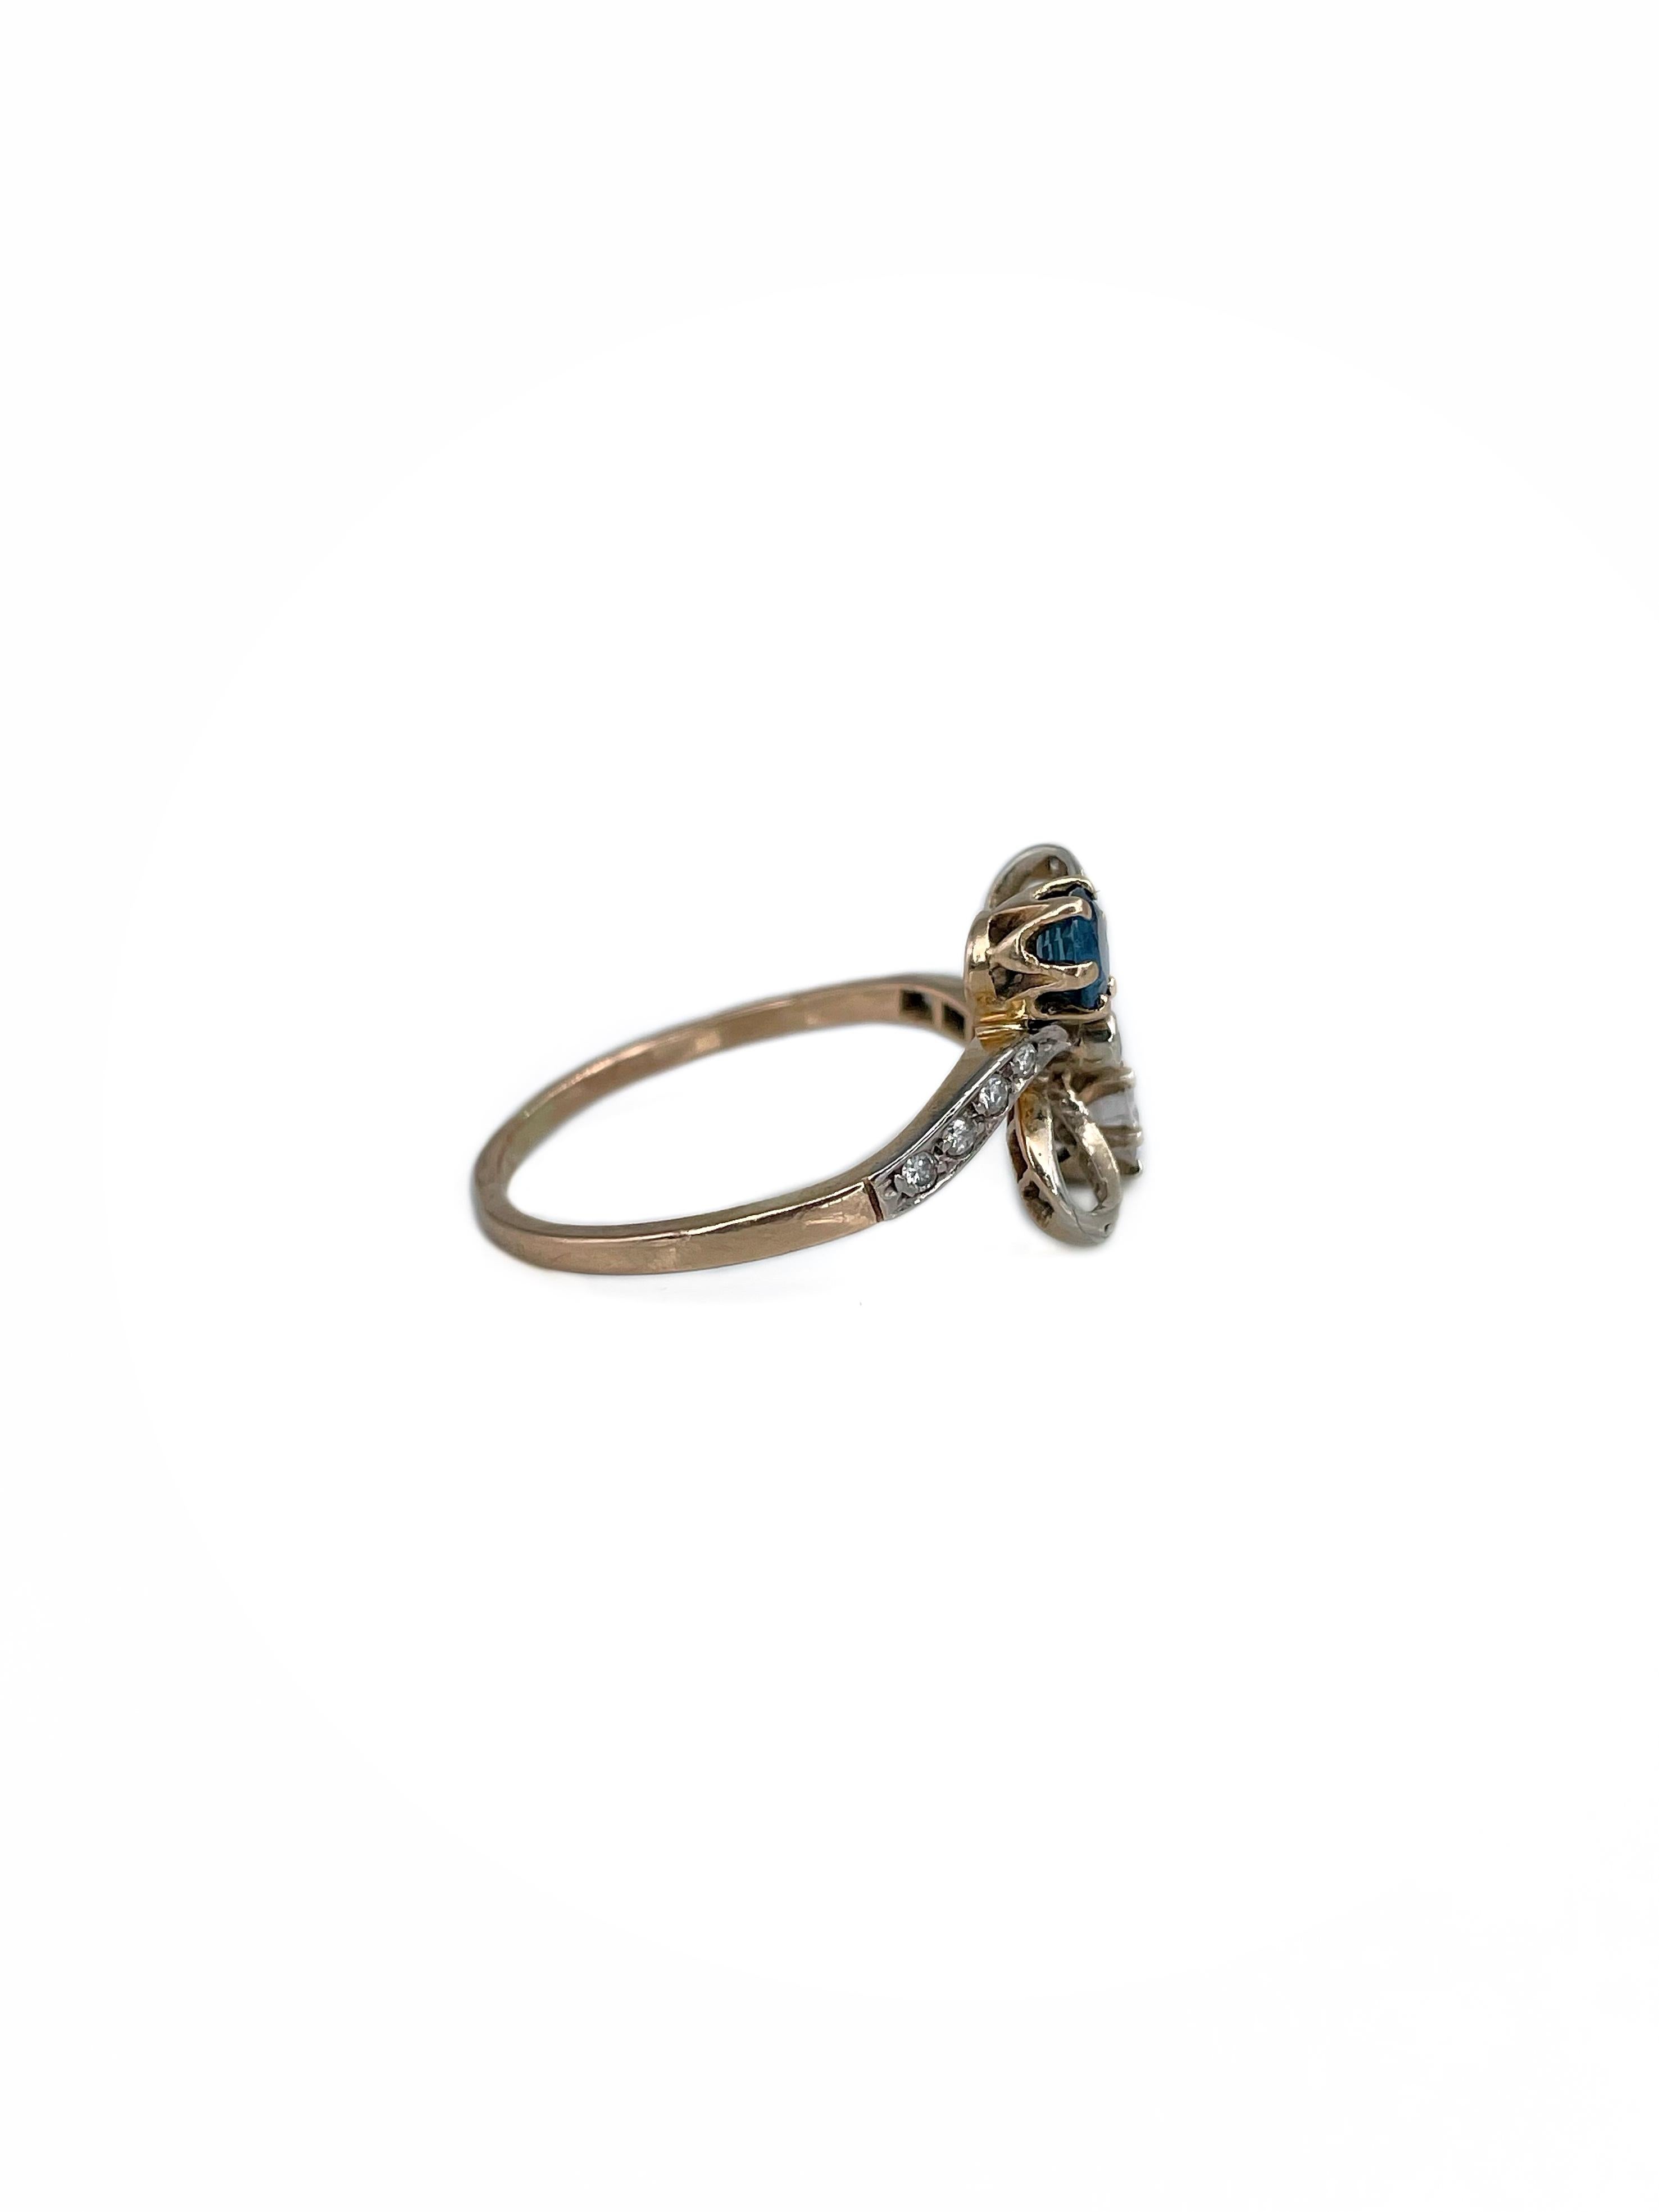 Belle Époque Belle Epoque 18 Karat Gold Sapphire Diamond Bow Design Engagement Ring For Sale